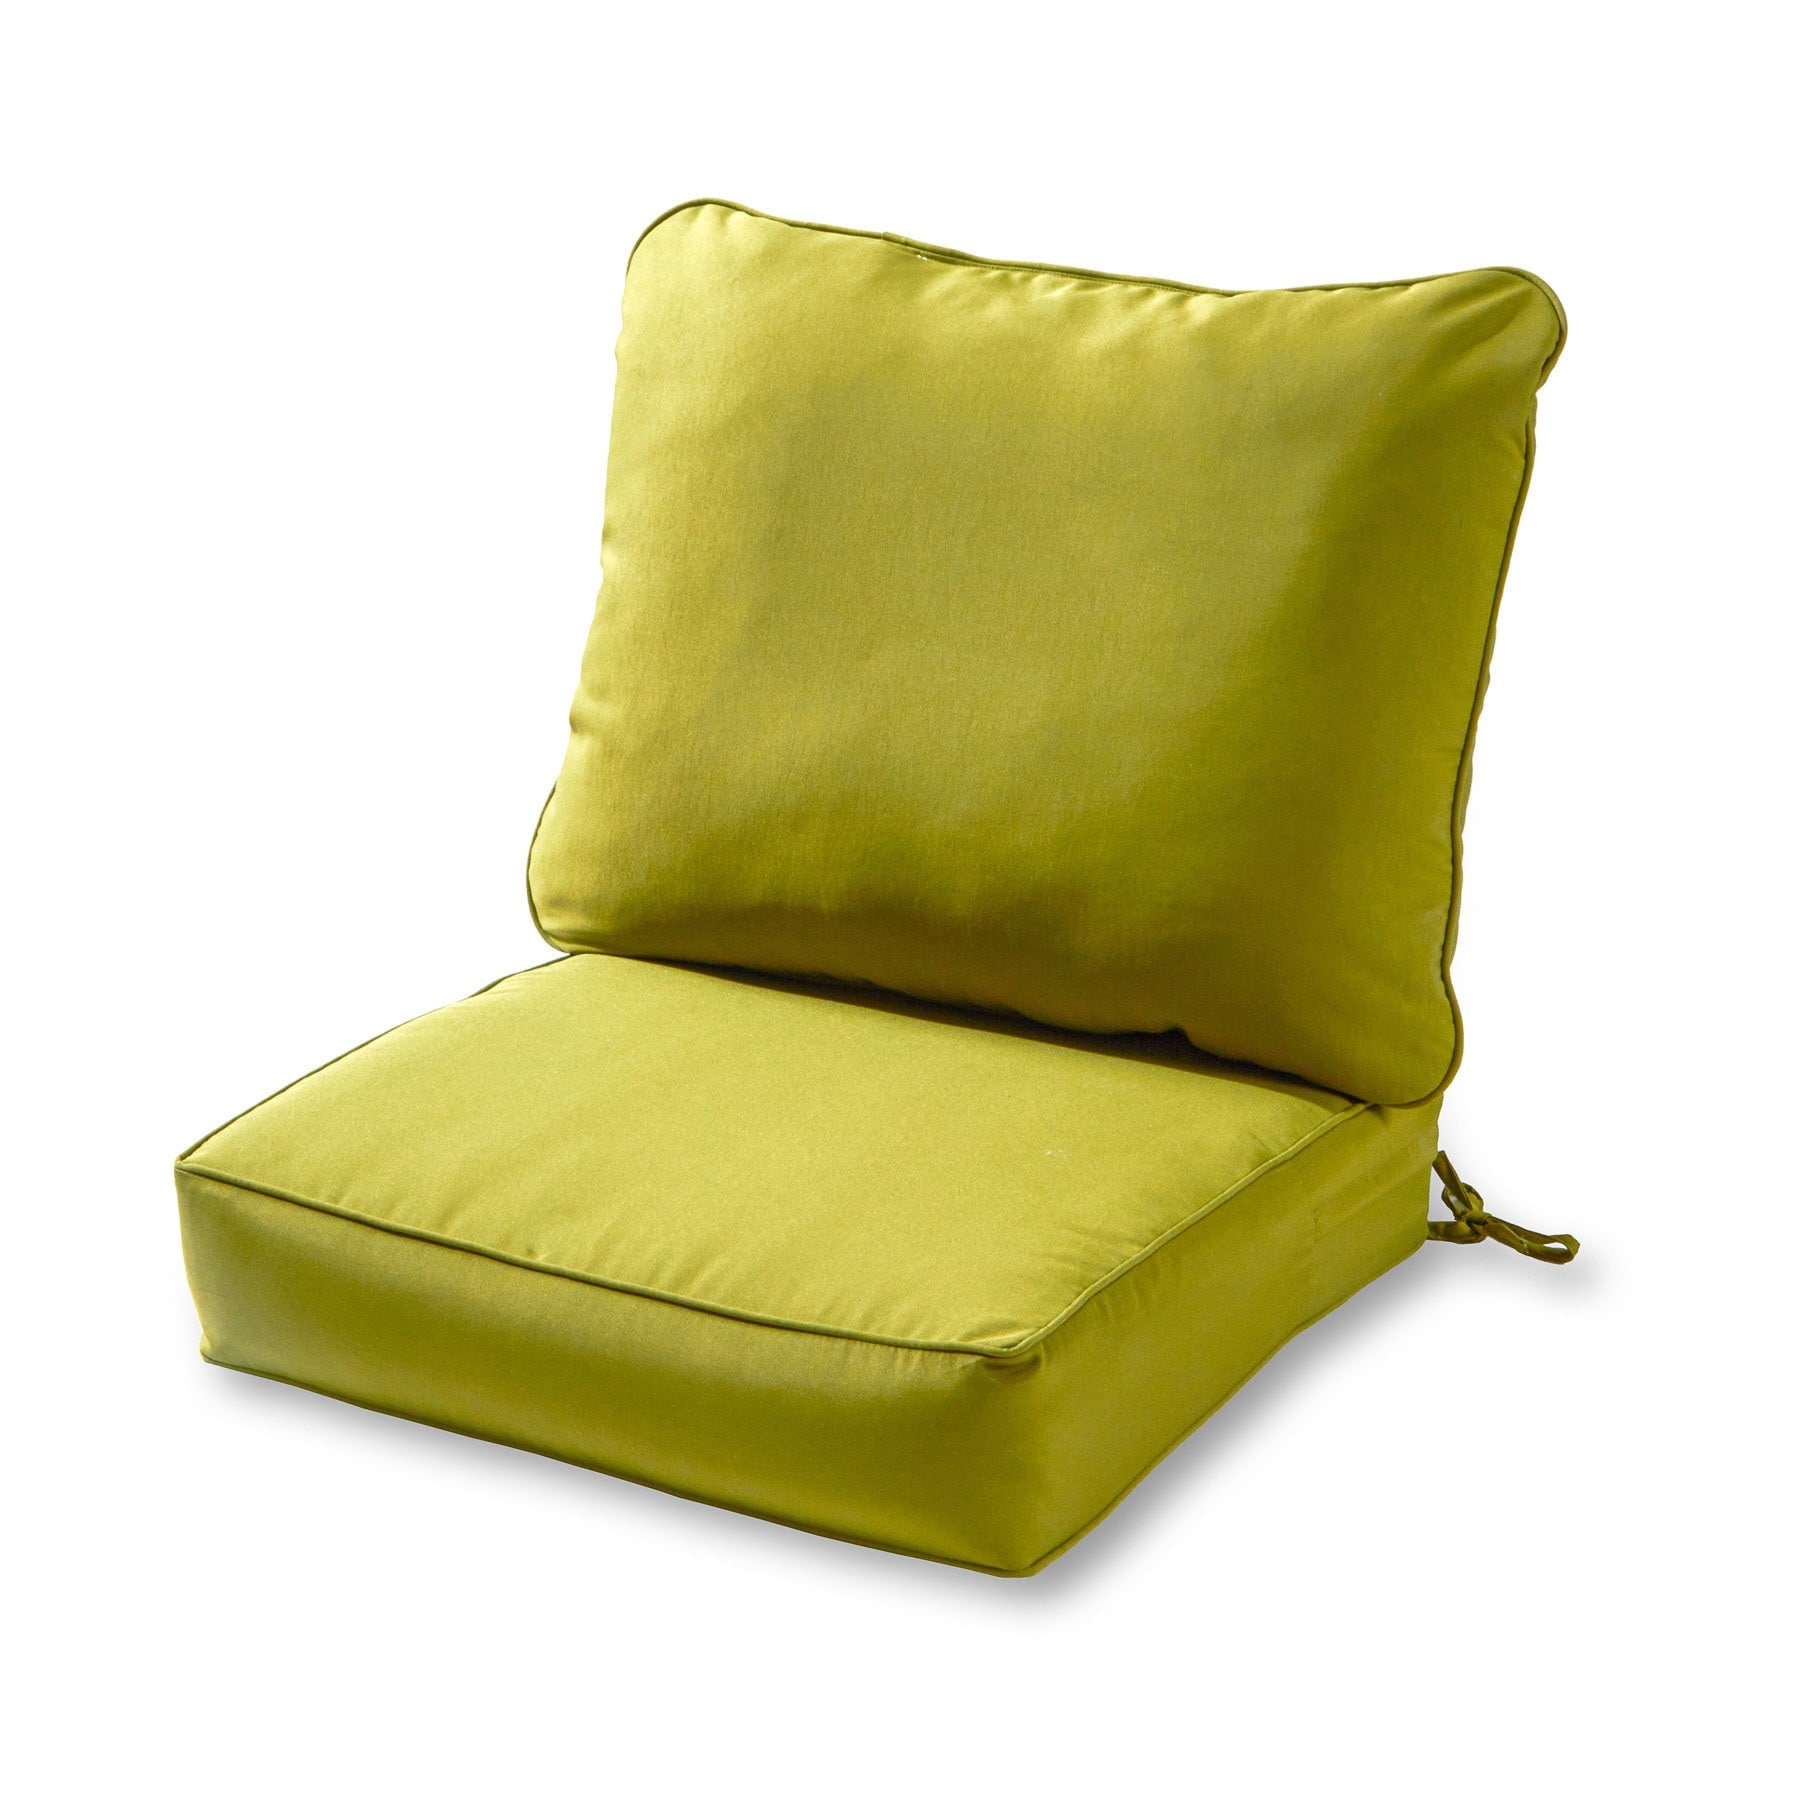 Садовые подушки купить. Подушки для садовых кресел. Подушка для сидения на диване. Подушки для садовой мебели. Подушки для уличного дивана.